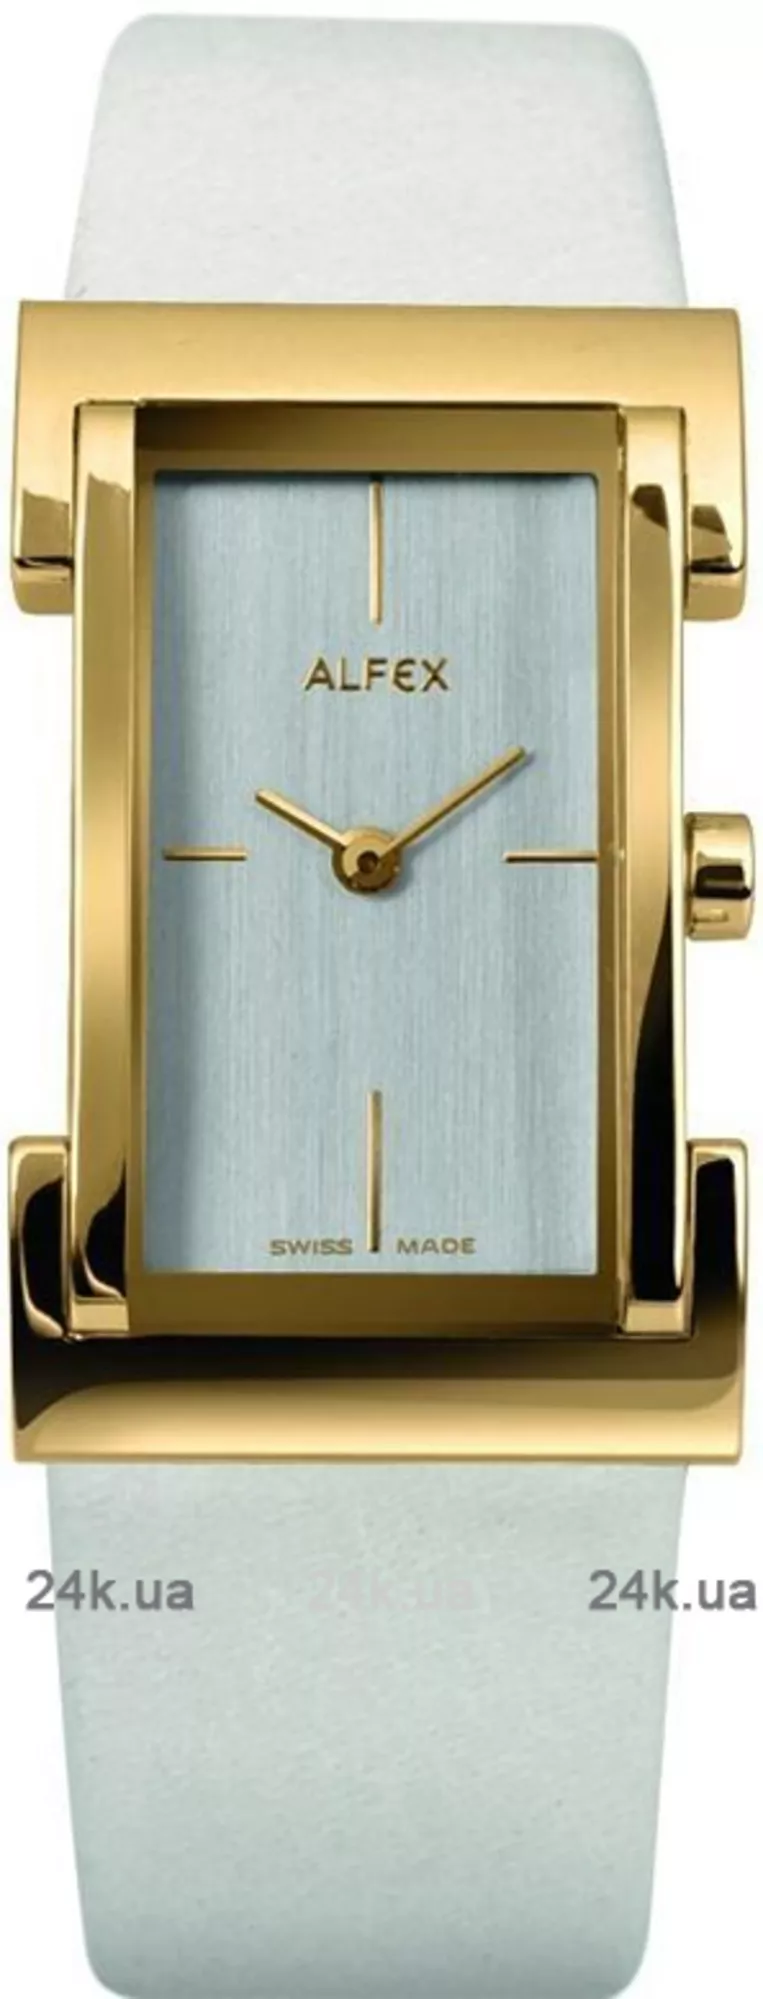 Часы Alfex 5668/139